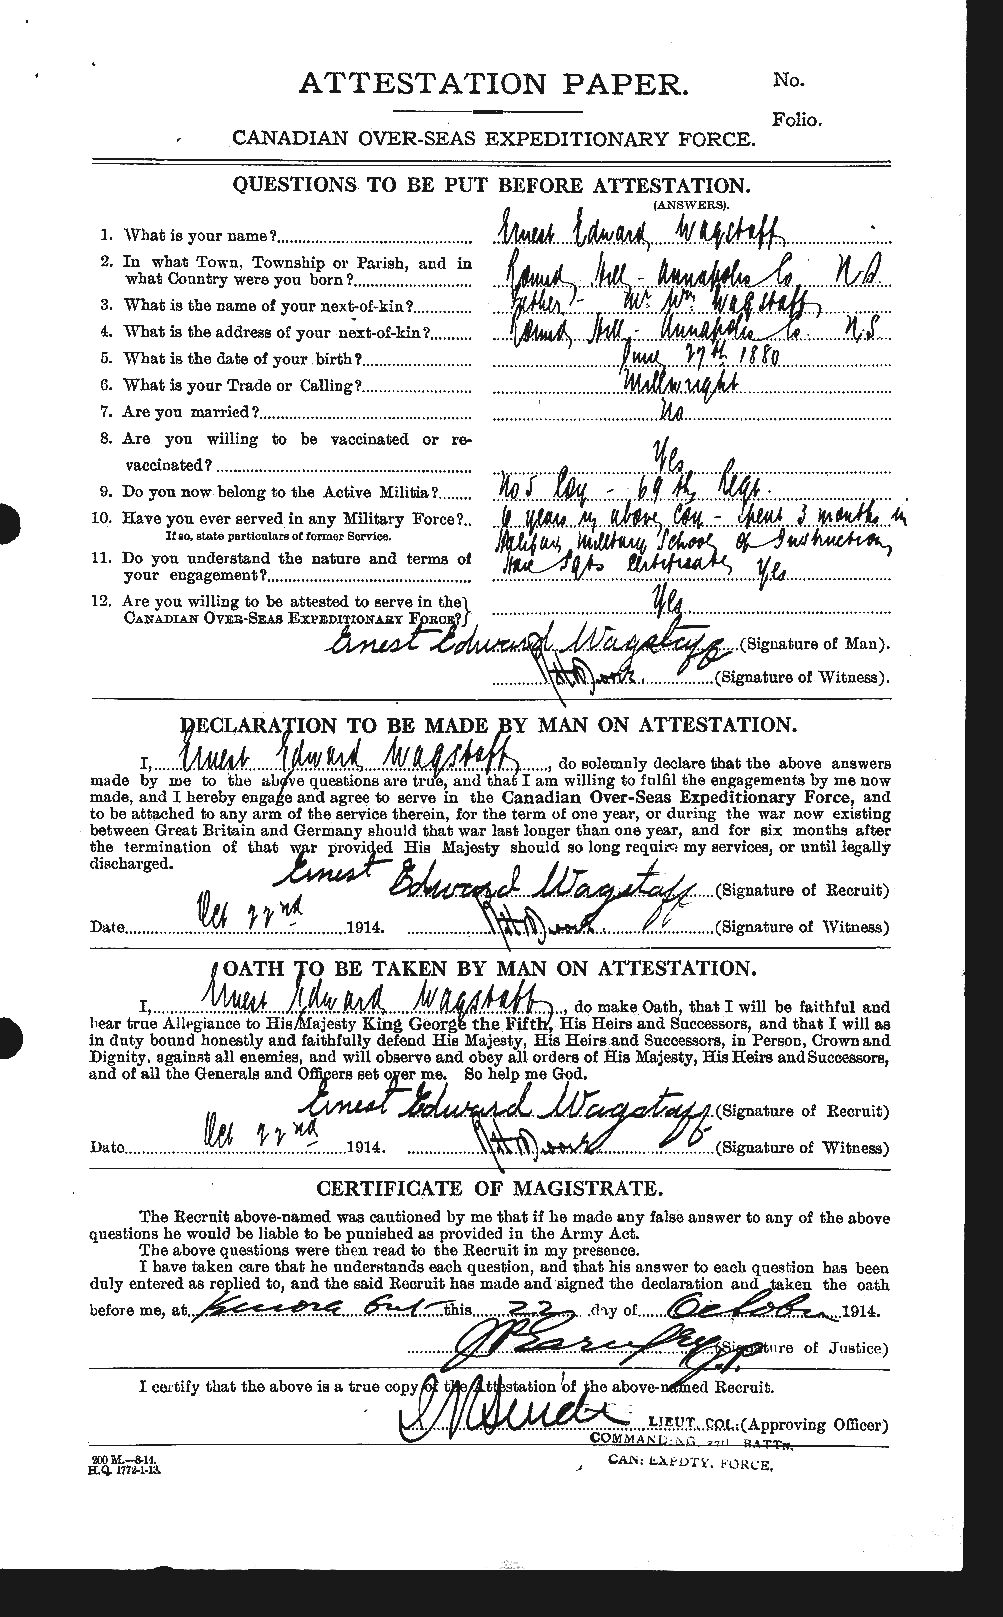 Dossiers du Personnel de la Première Guerre mondiale - CEC 654052a